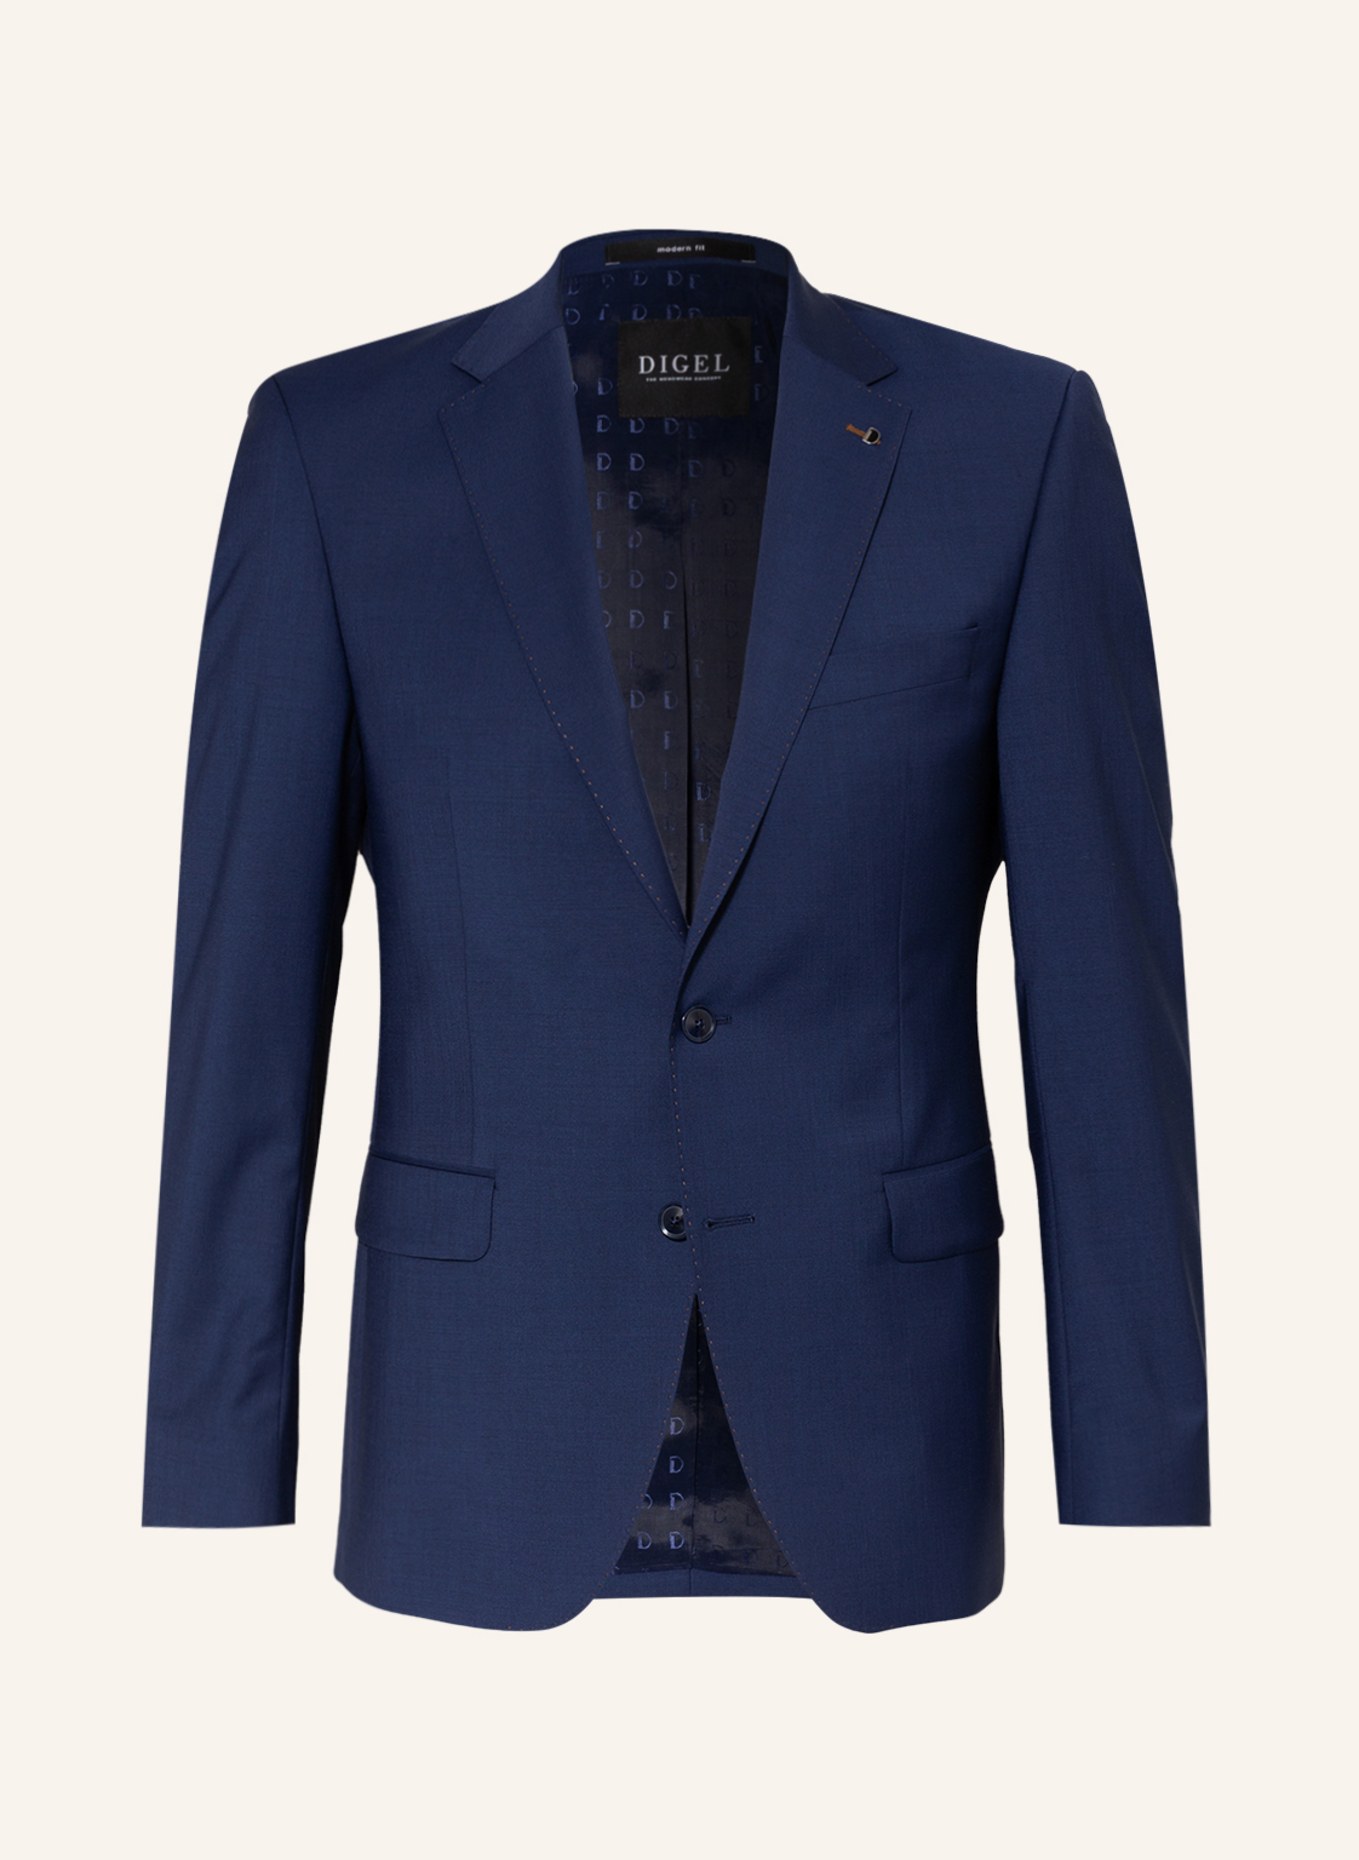 DIGEL Suit jacket DUNCAN regular fit , Color: 24 BLAU (Image 1)